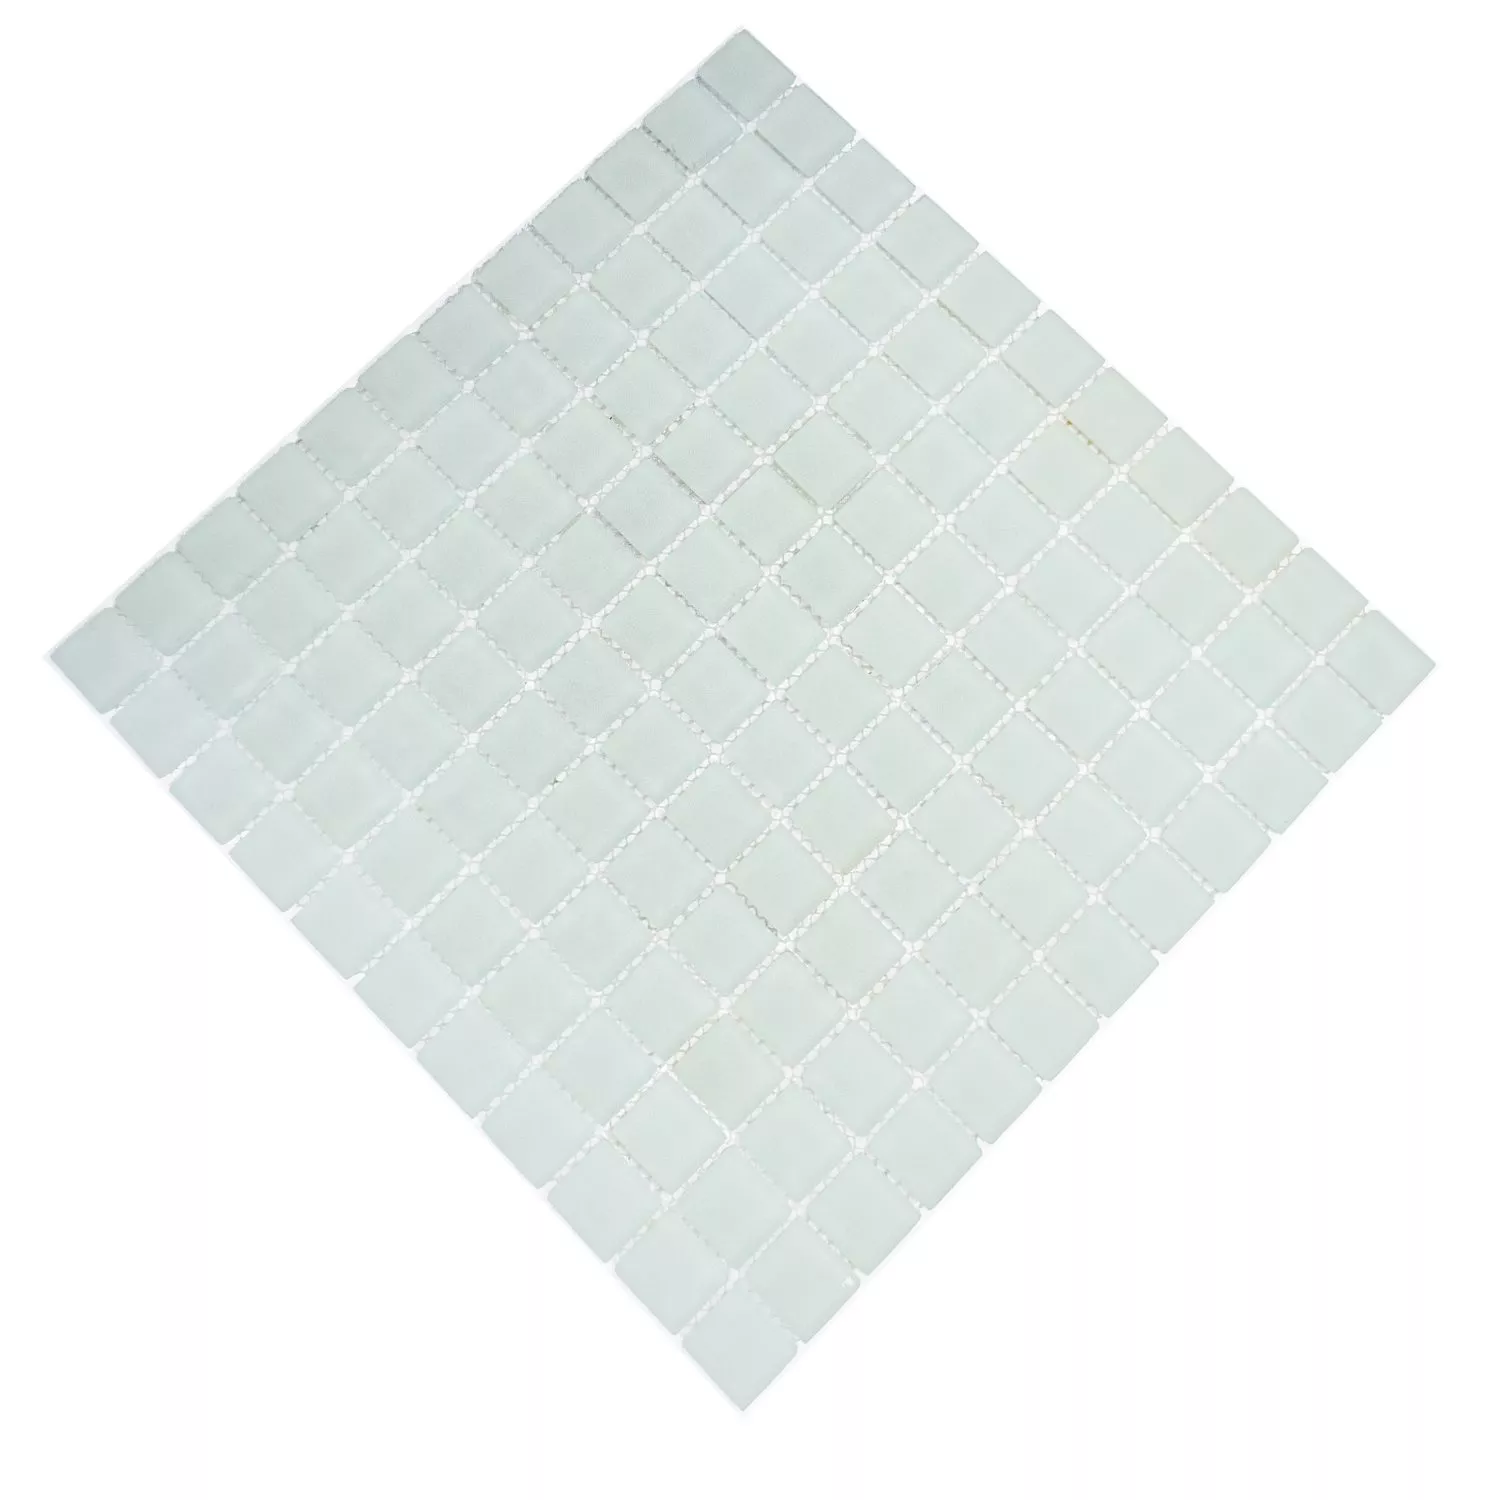 Próbka Mozaika Szklana Płytki Biały Matowy Oszroniony